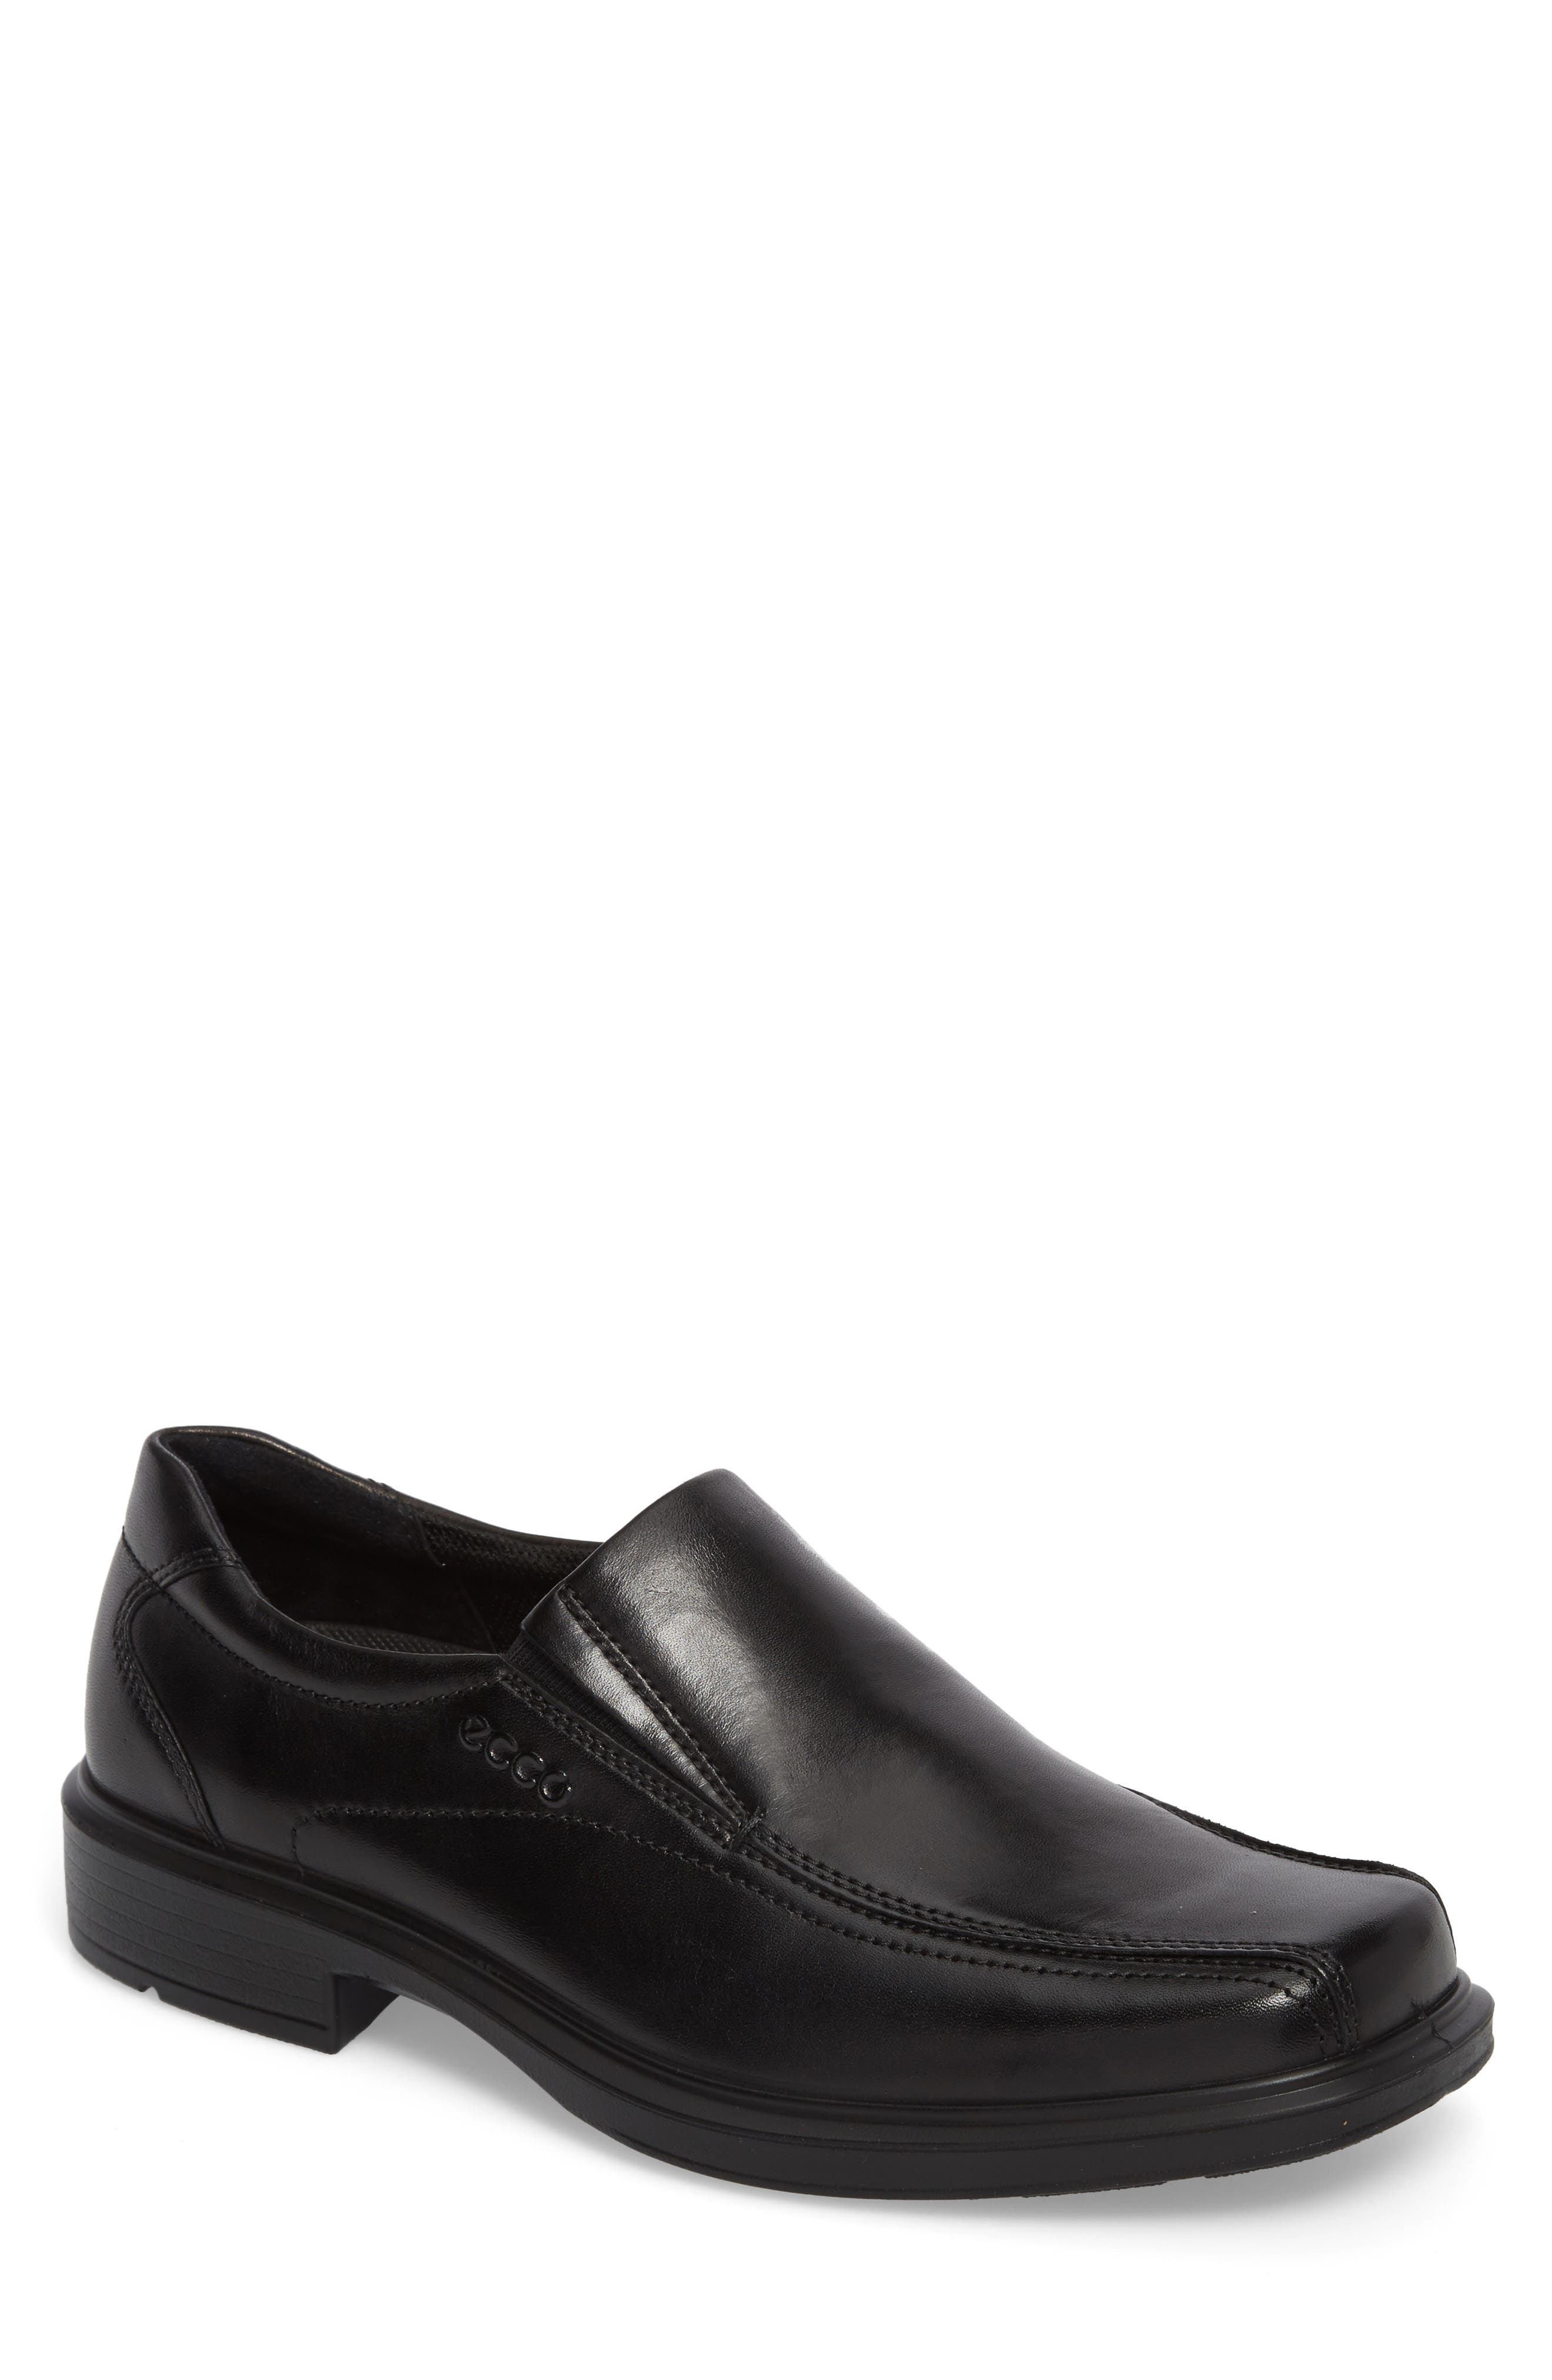 mens black formal slip on shoes